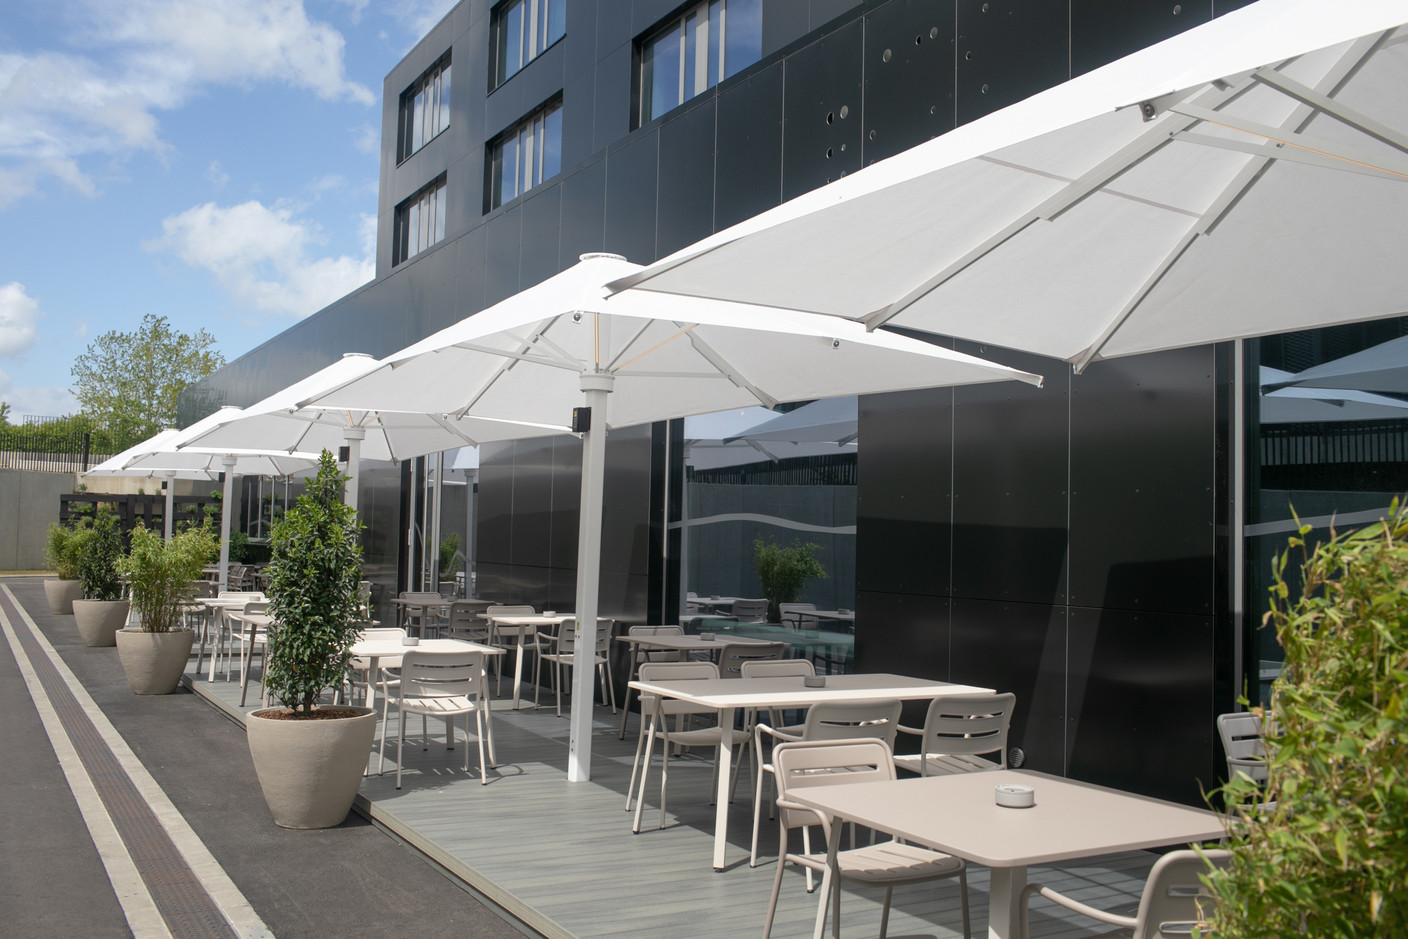 Le restaurant dispose d’une terrasse latérale. (Photo: Matic Zorman / Maison Moderne)